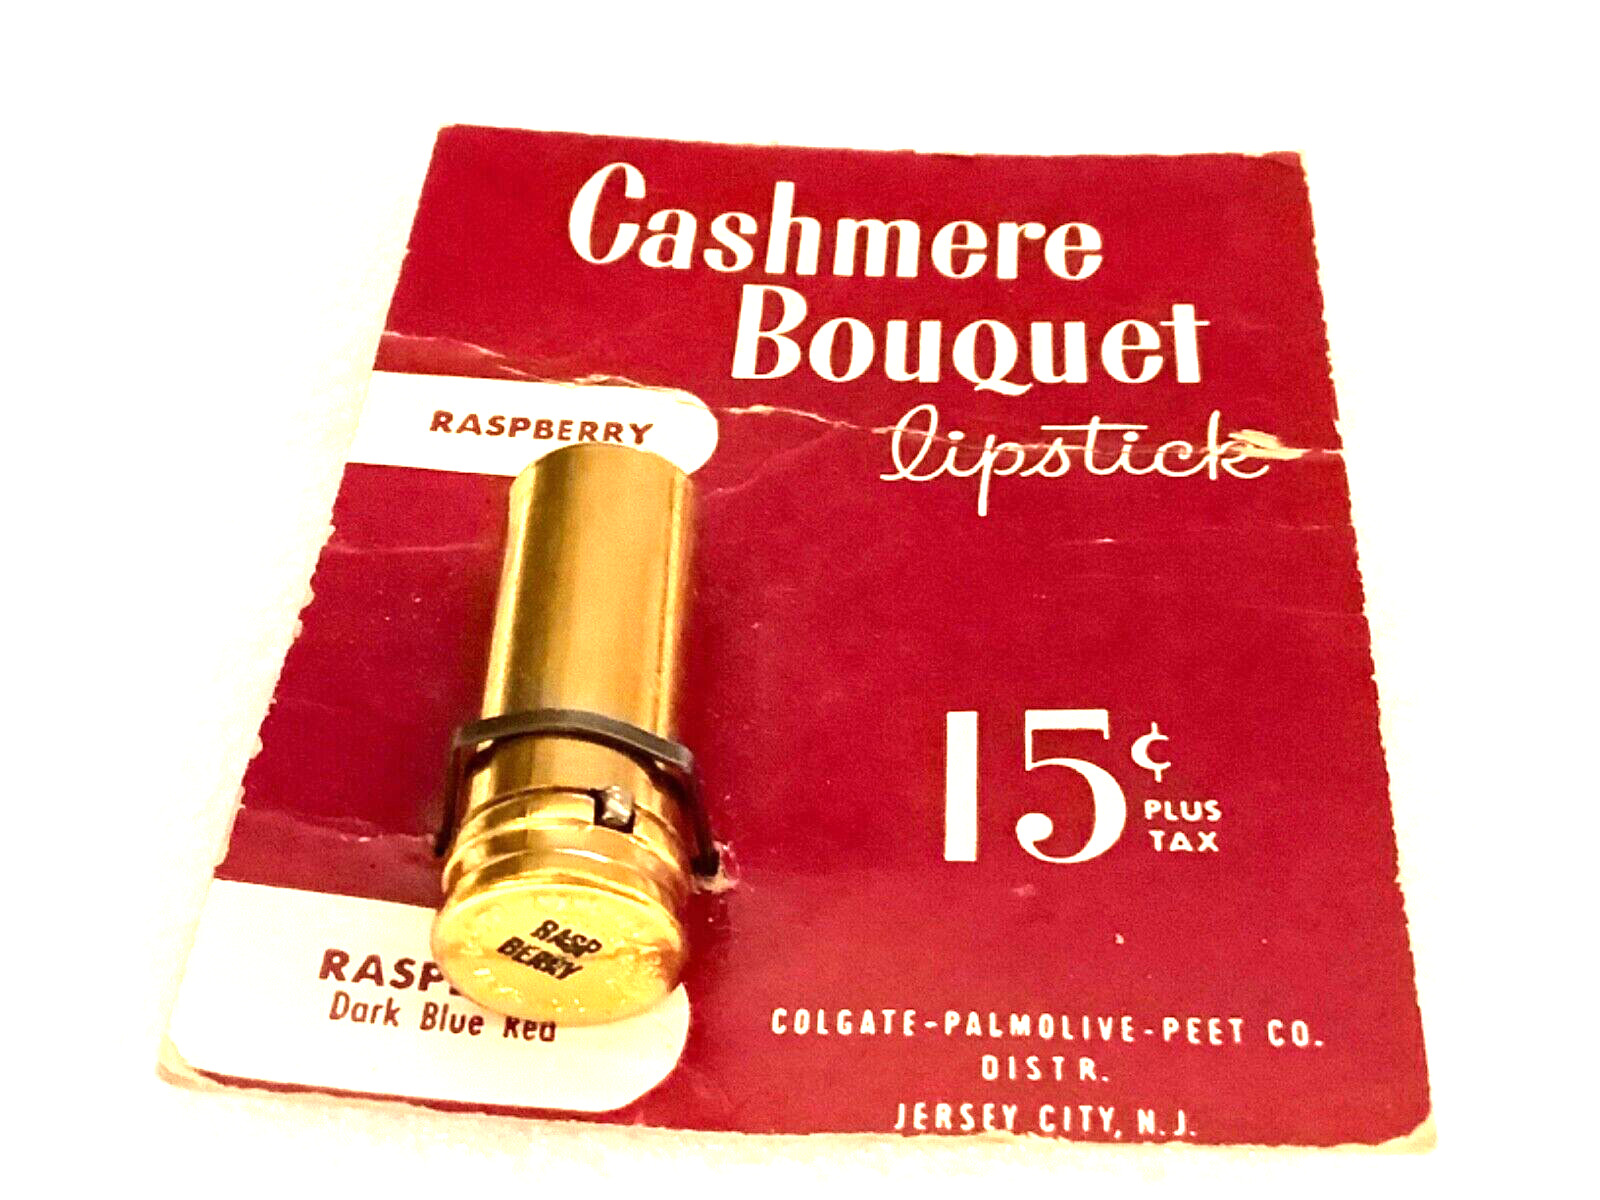 1940s Cashmere Bouquet Lipstick Colgate-palmolive-peet Vintage Trial Size 15c